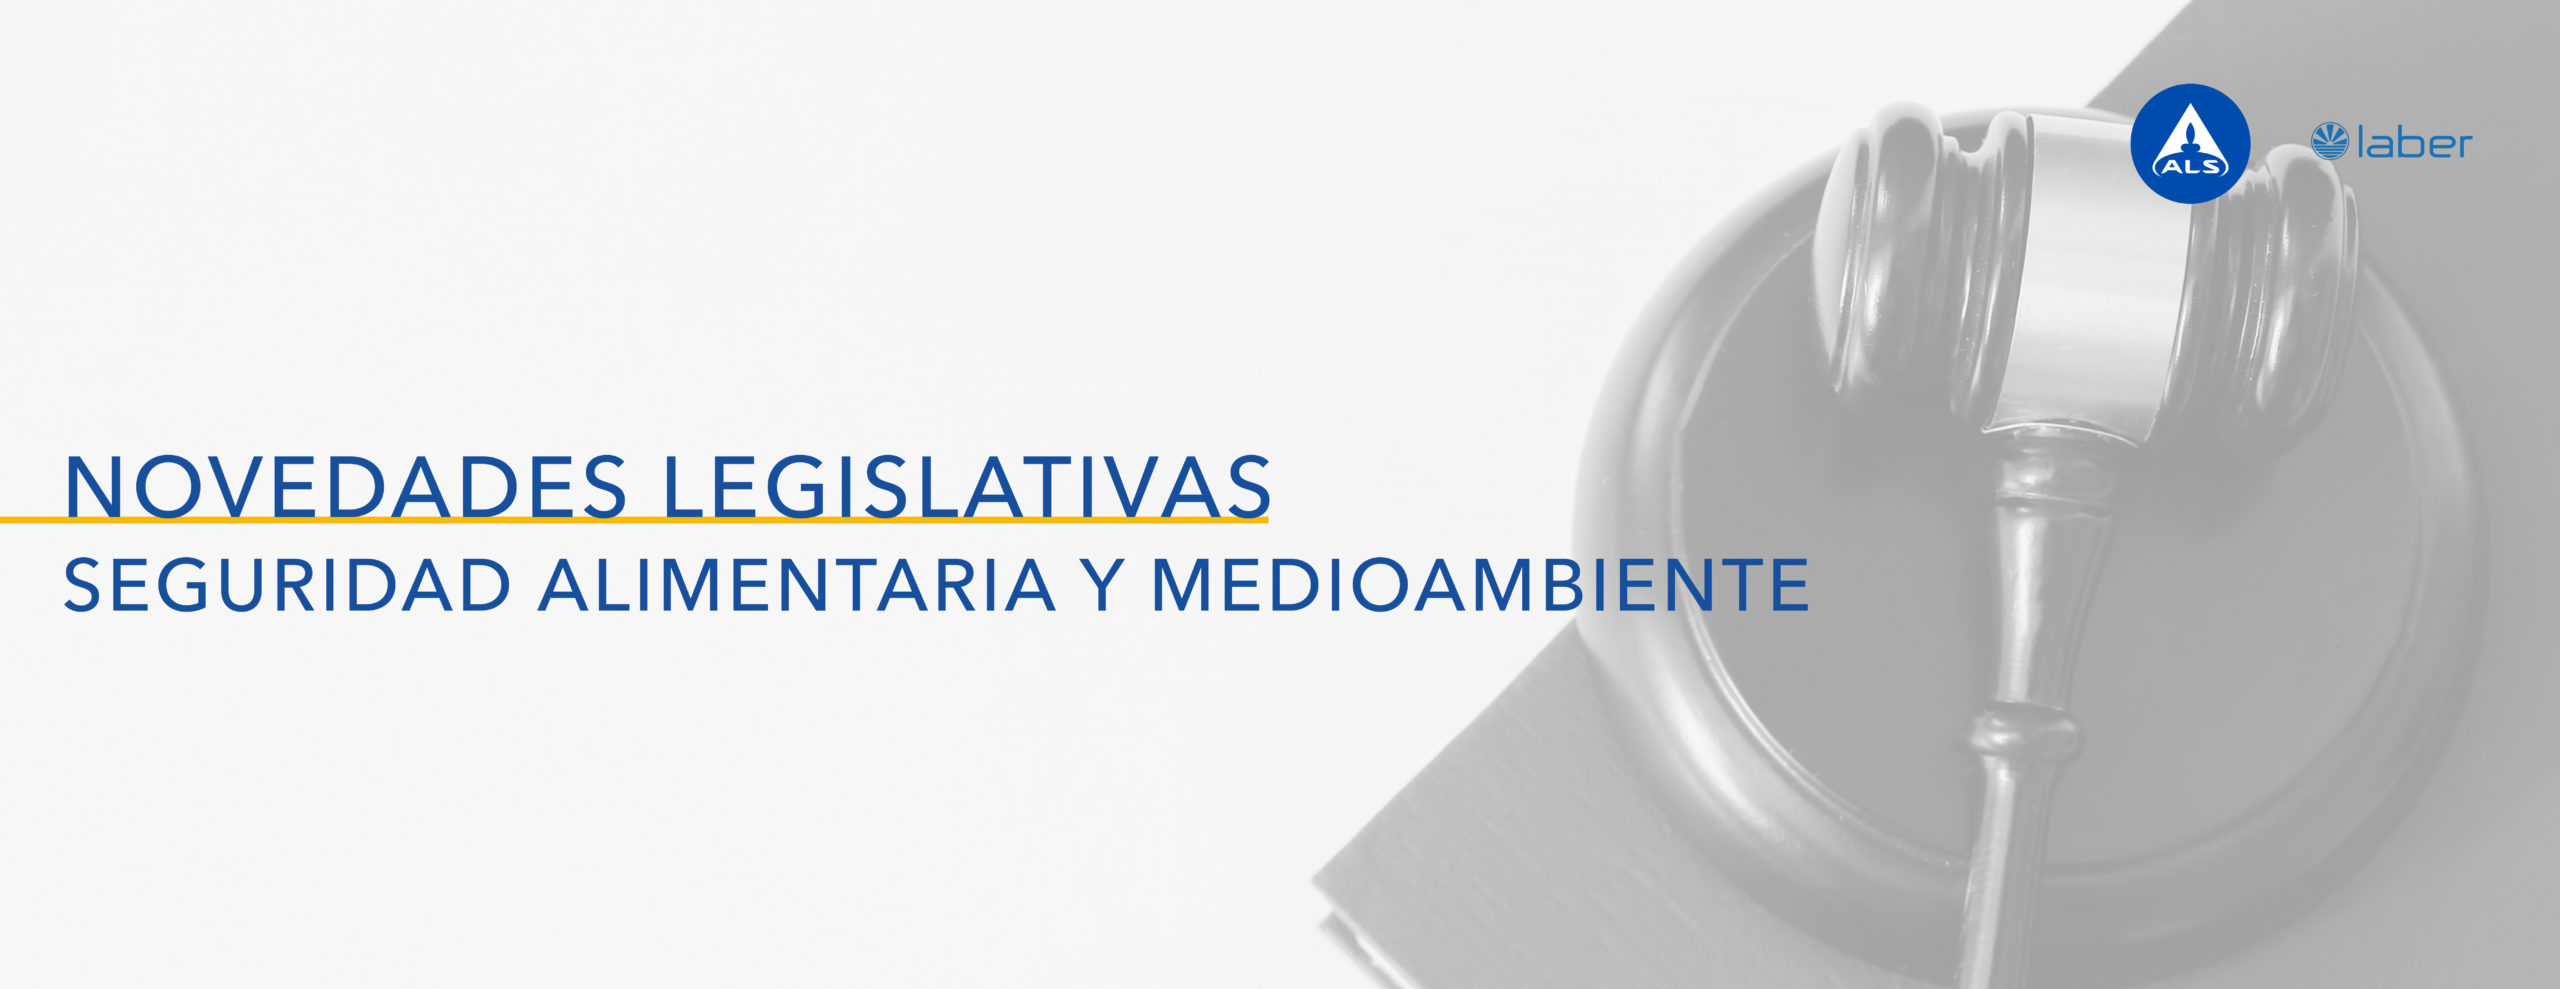 Legislación seguridad alimentaria, medioambiente, julio 2022,  ALS Galicia, Laber